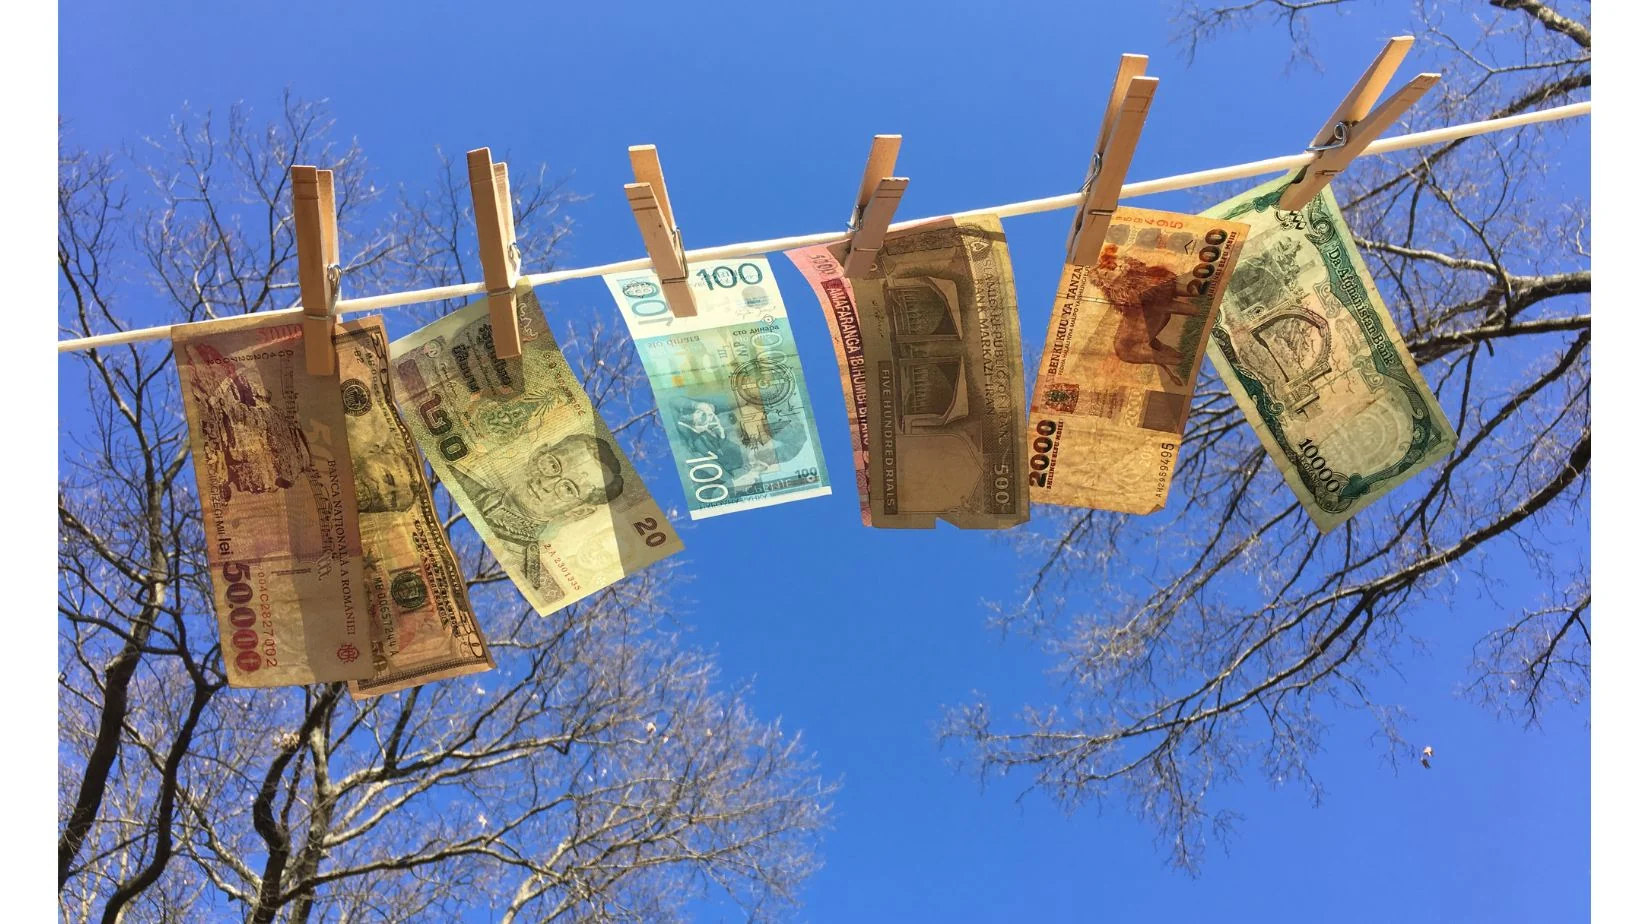 Некоторые иностранные банкноты привязаны к веревке